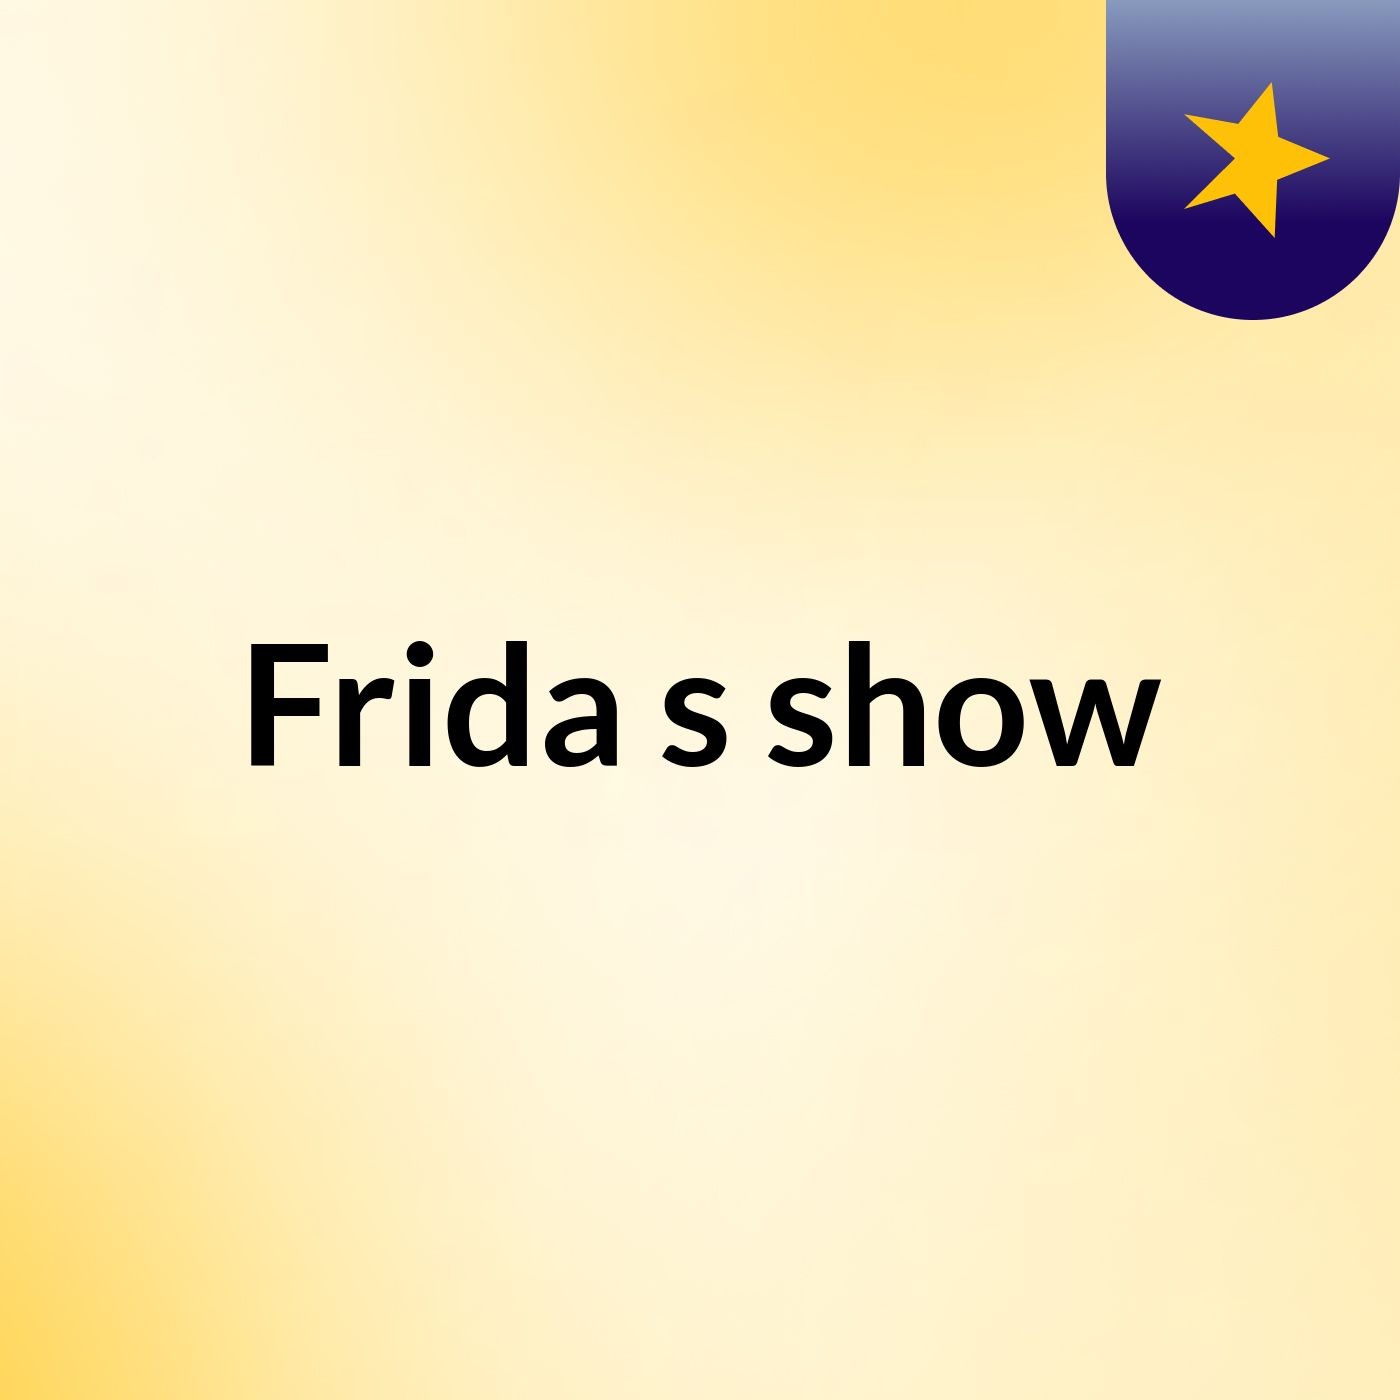 Frida's show